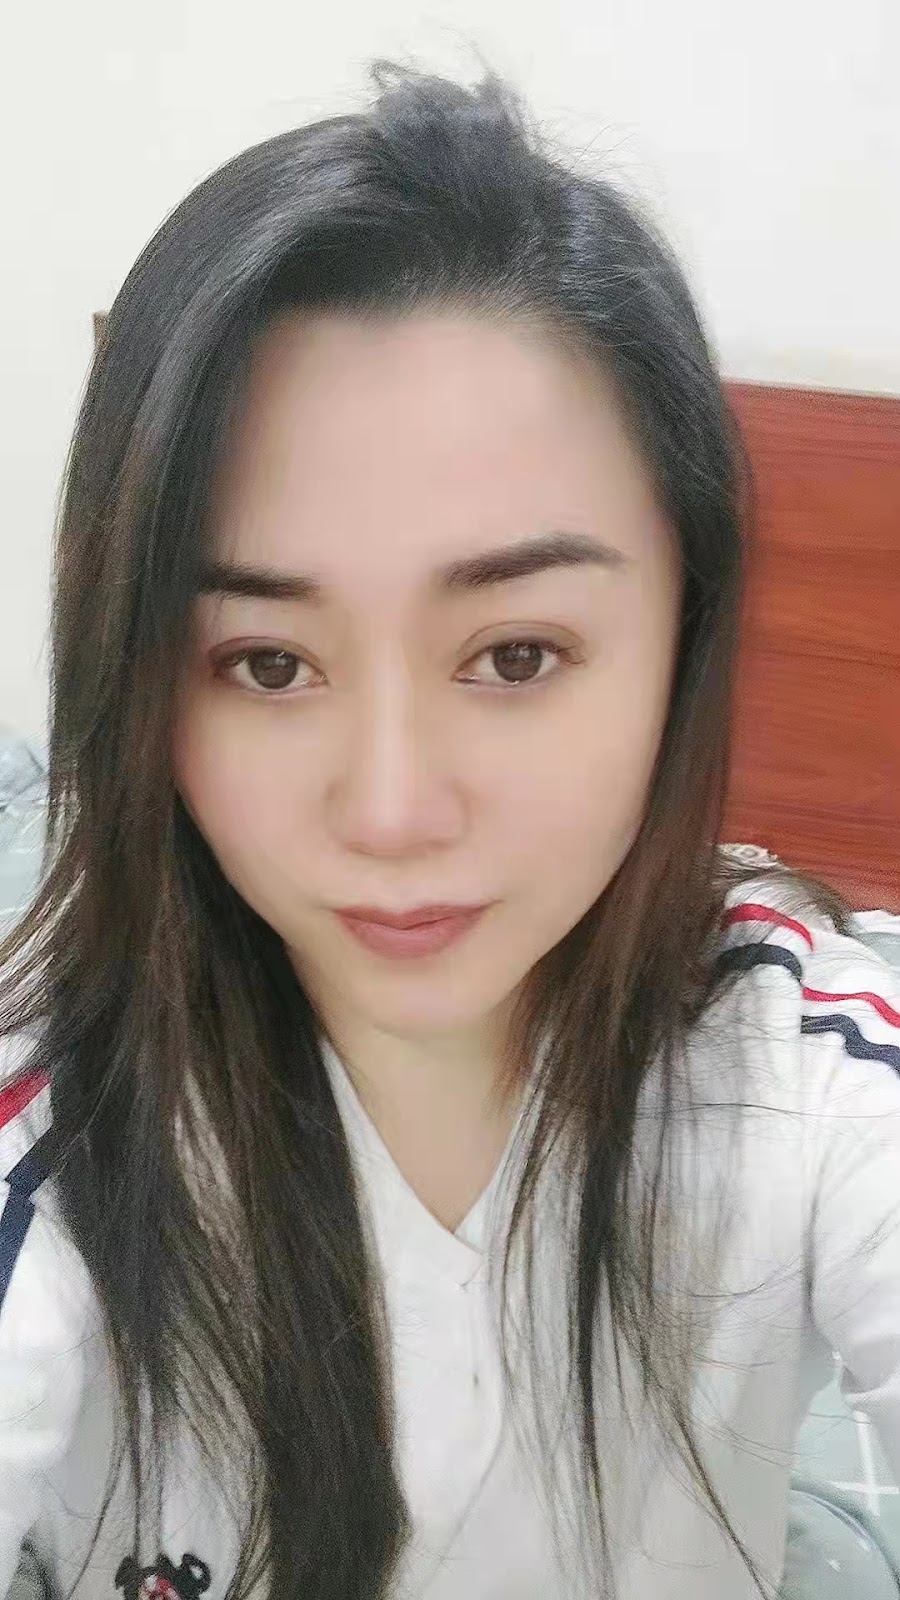 国際結婚したい中国人女性CN-0936さんのご紹介